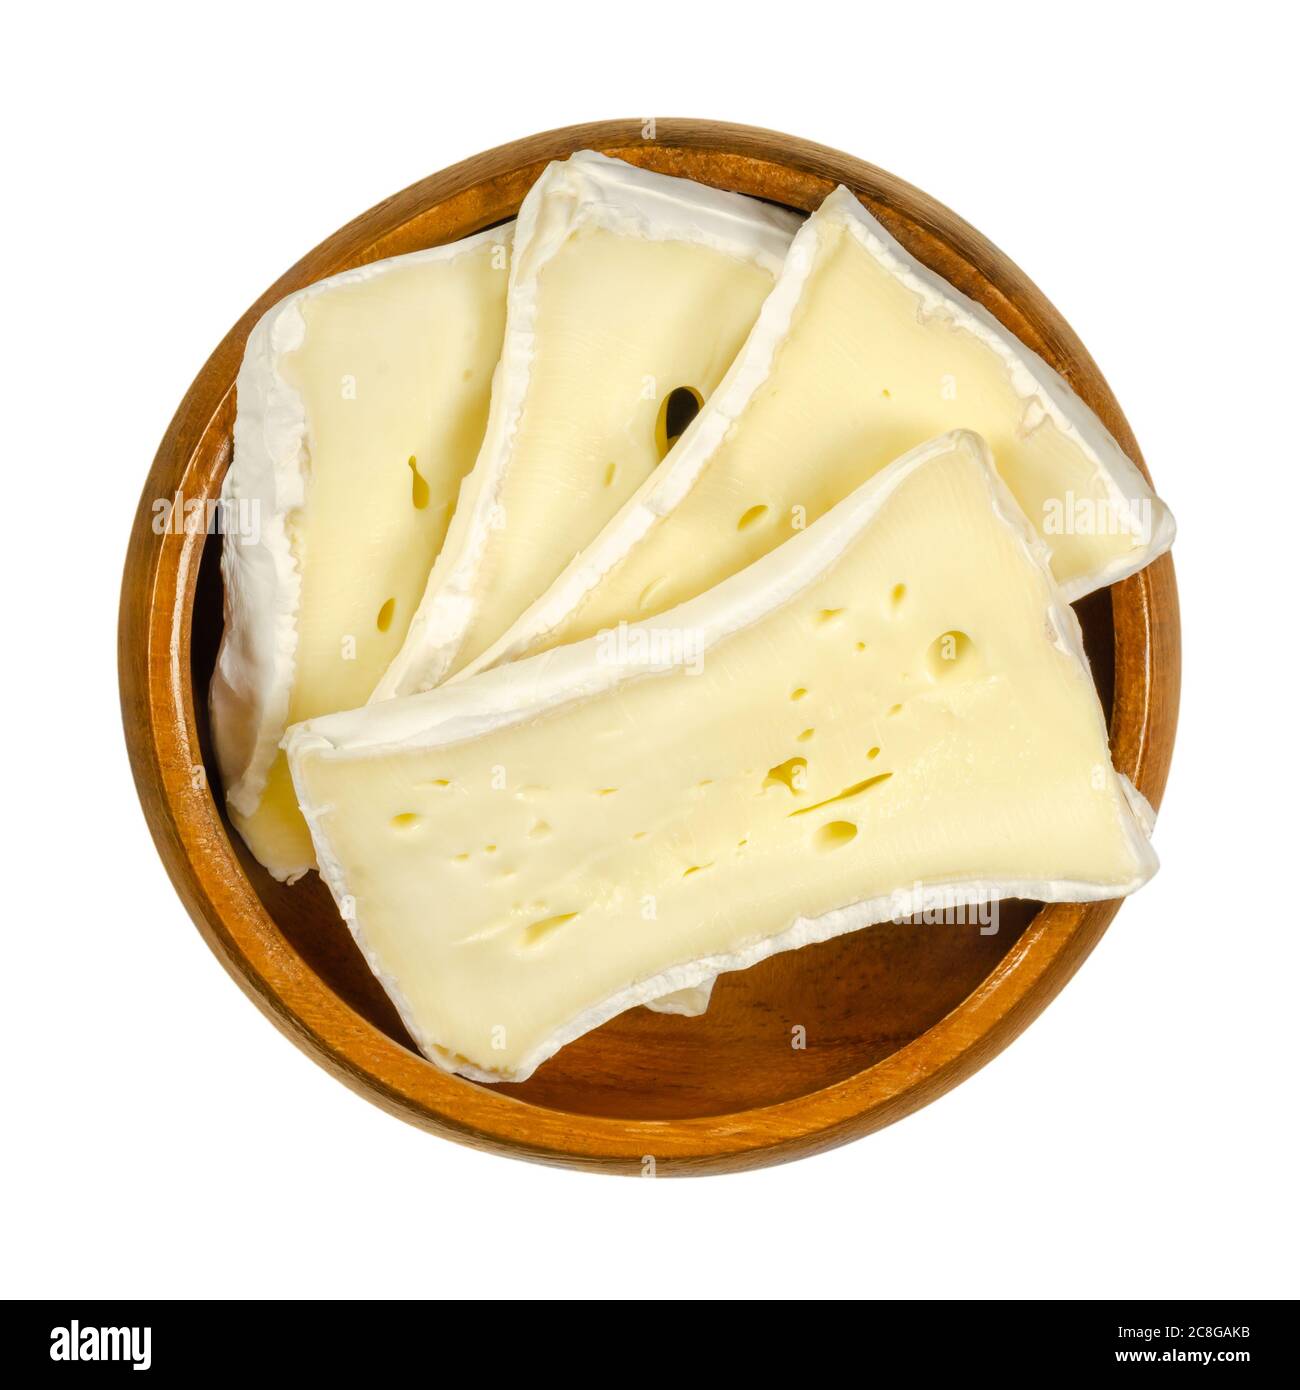 Rebanadas de queso de molde suave en un tazón de madera. Queso cremoso húmedo, hecho de leche de vaca, madurado en la superficie con un hongo especial. Camembert o Brie. Foto de stock